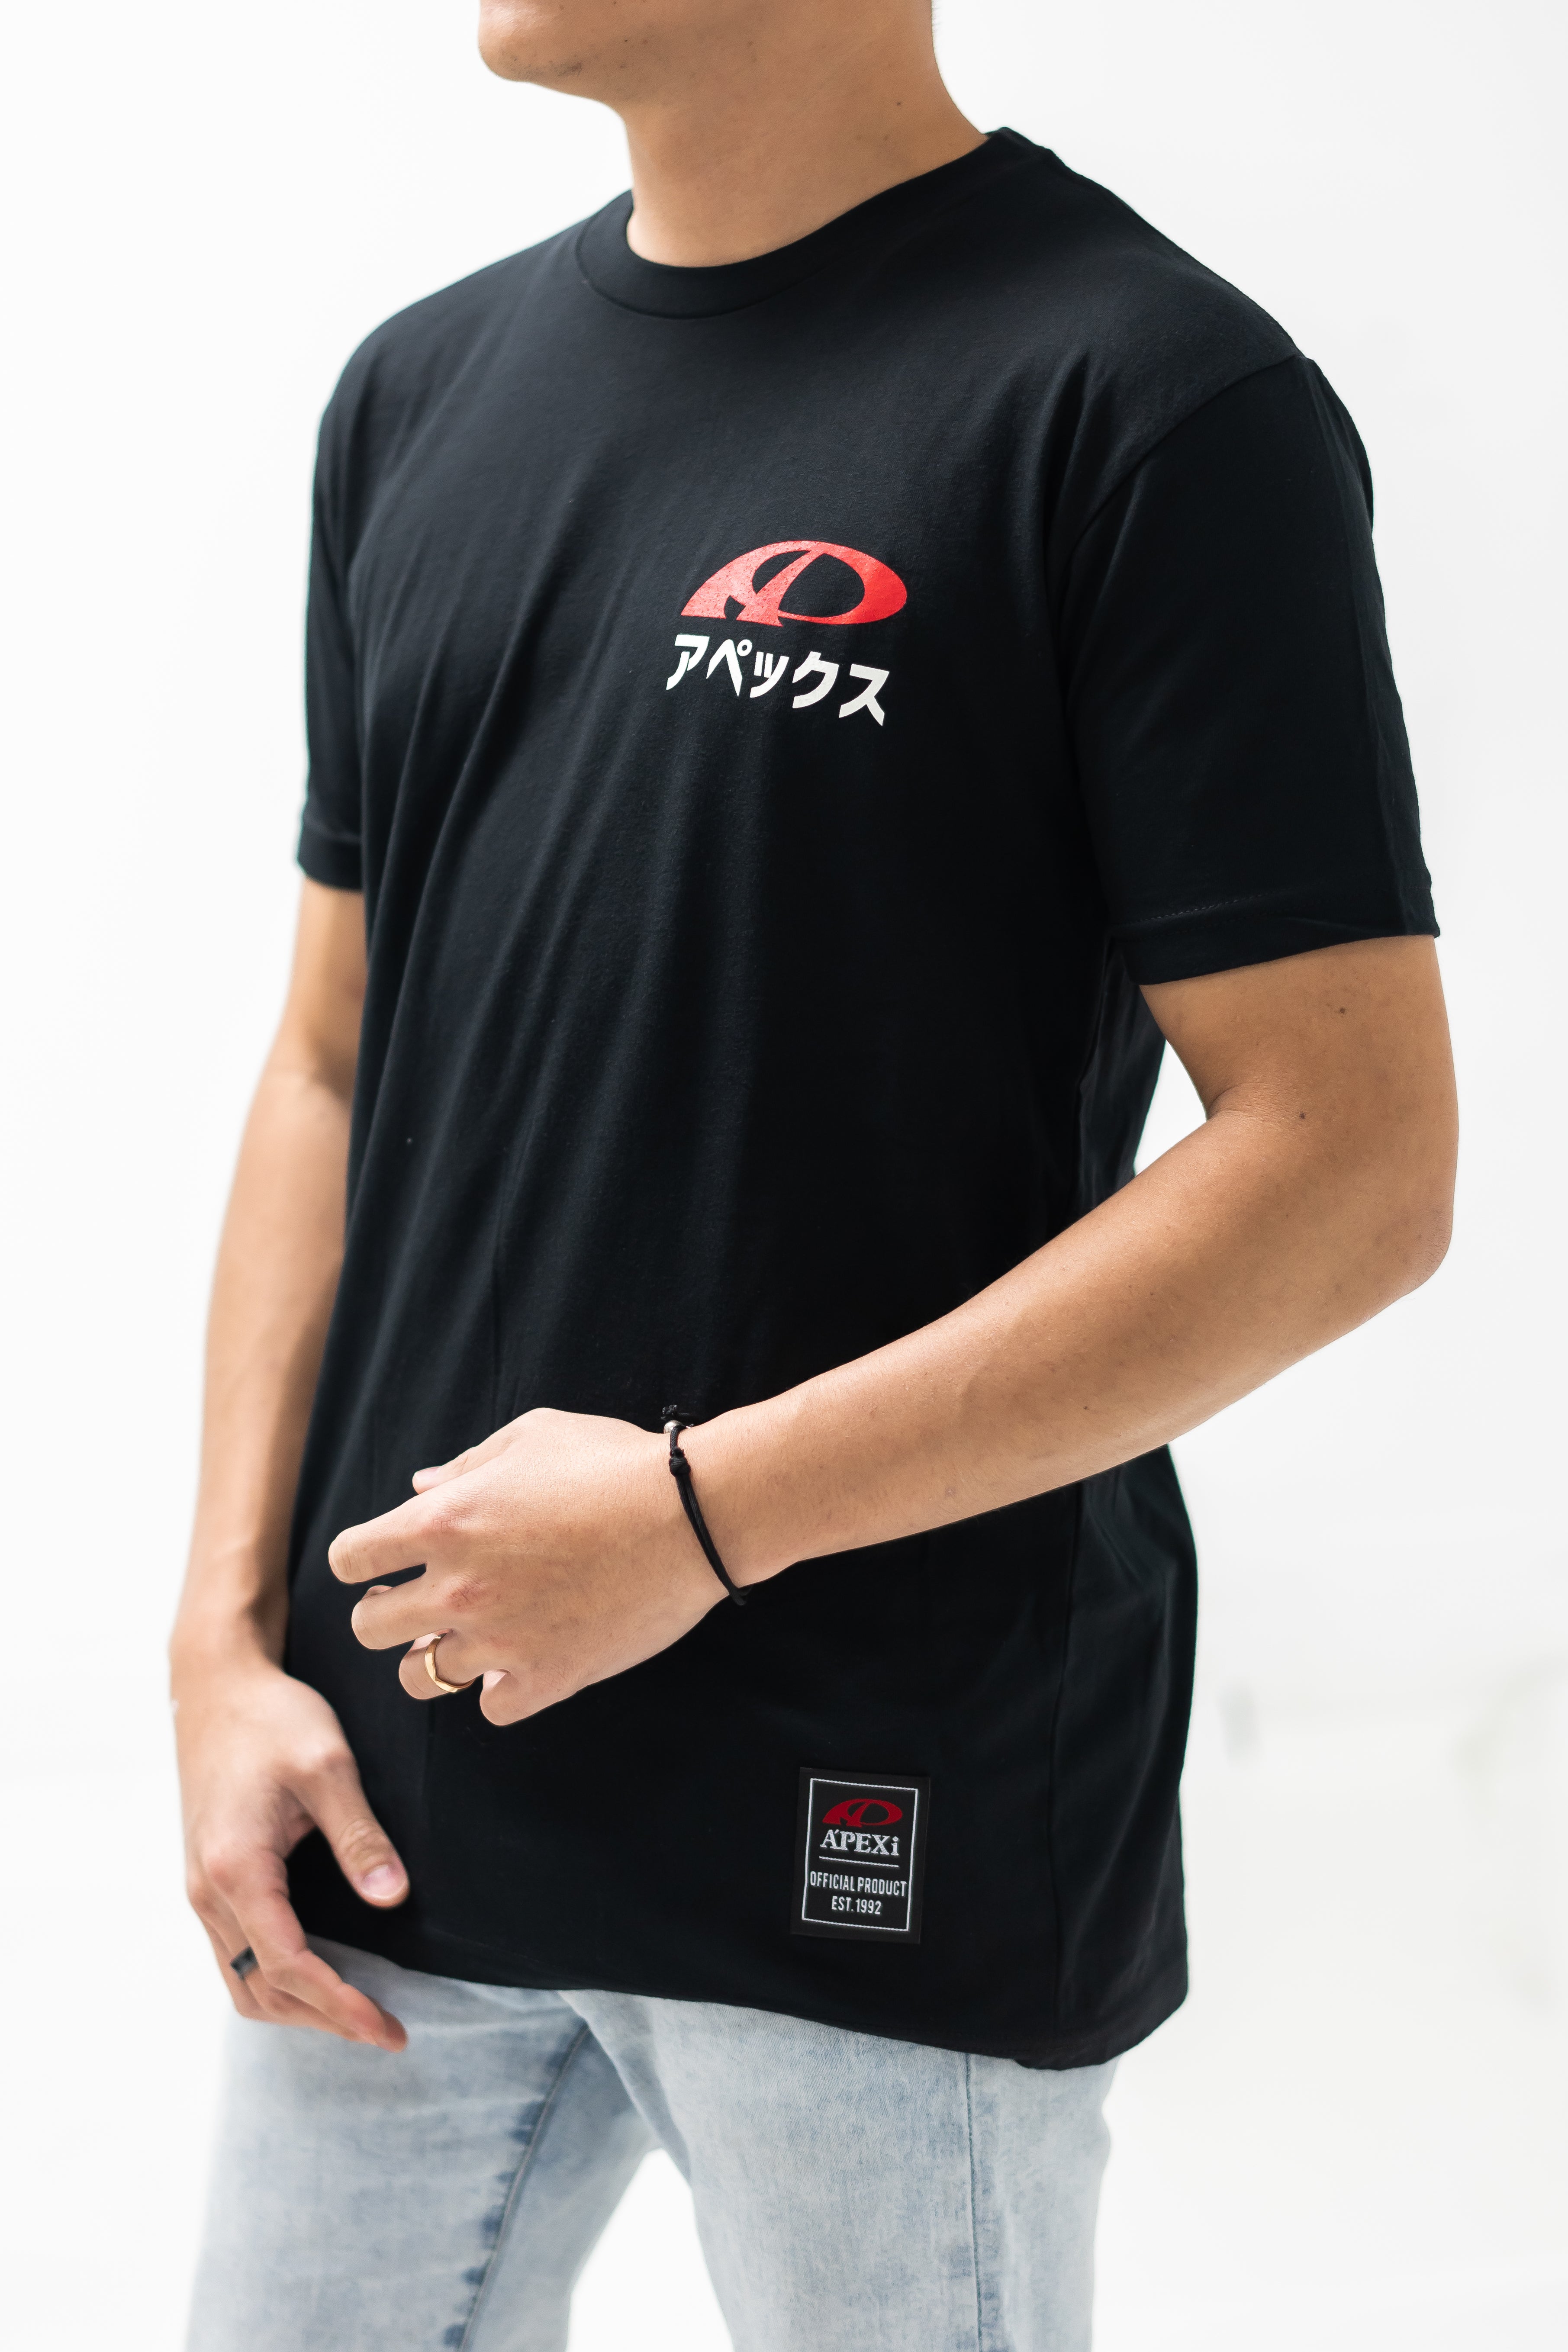 A'PEXi - A'PEXi Mt. Fuji T-shirt [Ver. 2.0] - 0